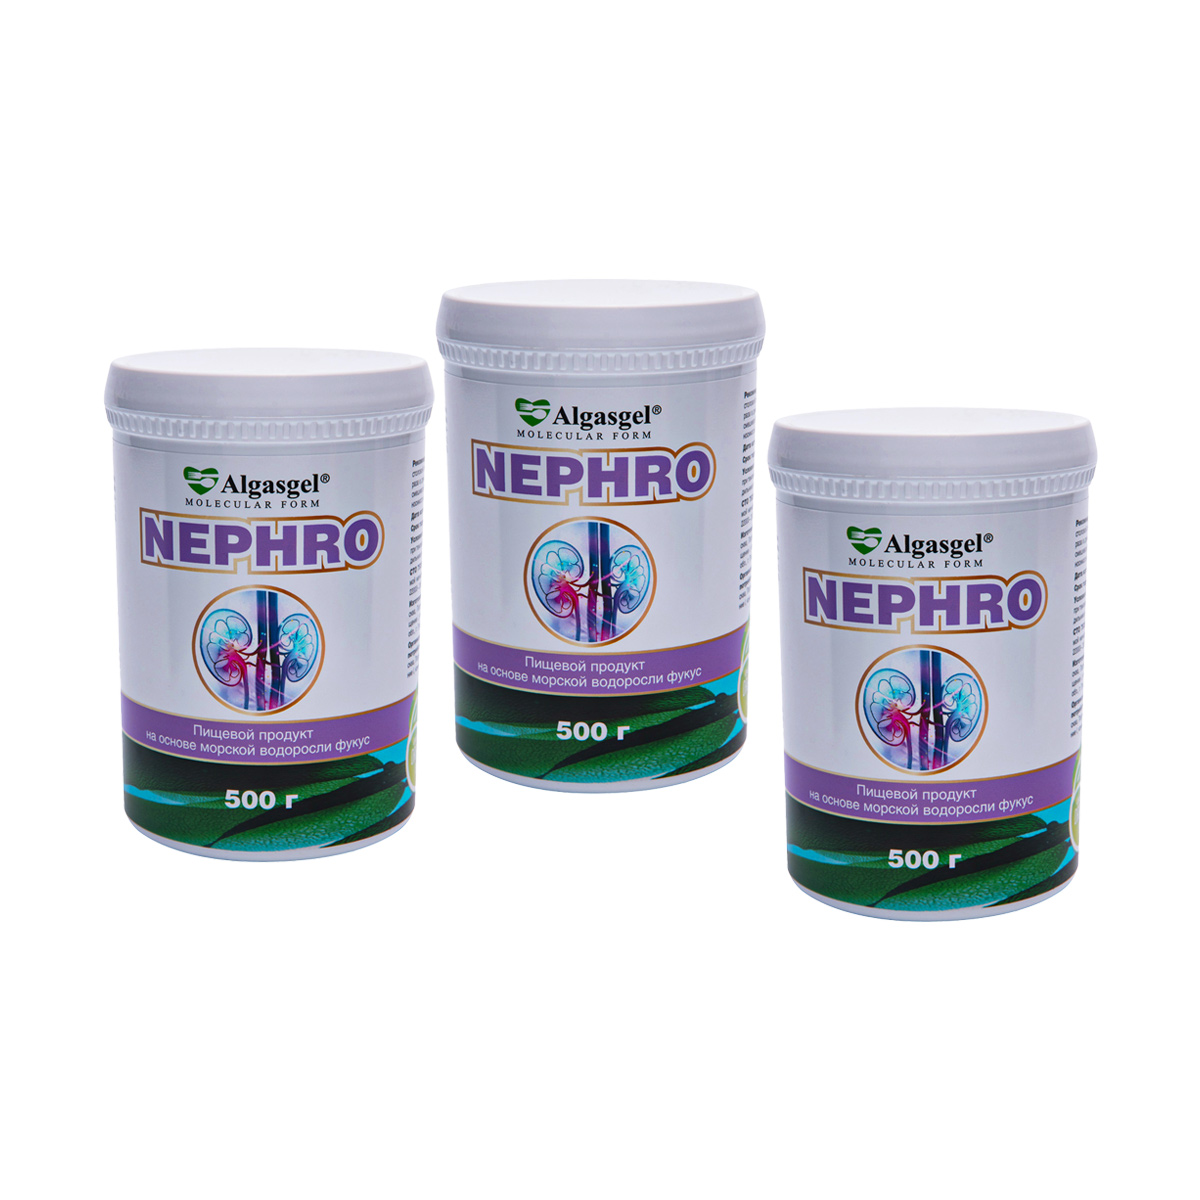 Algasgel Nephro для комплексного оздоровления почек и мочевыделительной системы (2 уп. по 500 г + 1 в подарок) пищевой продукт algasgel vita 2 уп по 500 г 1 в подарок